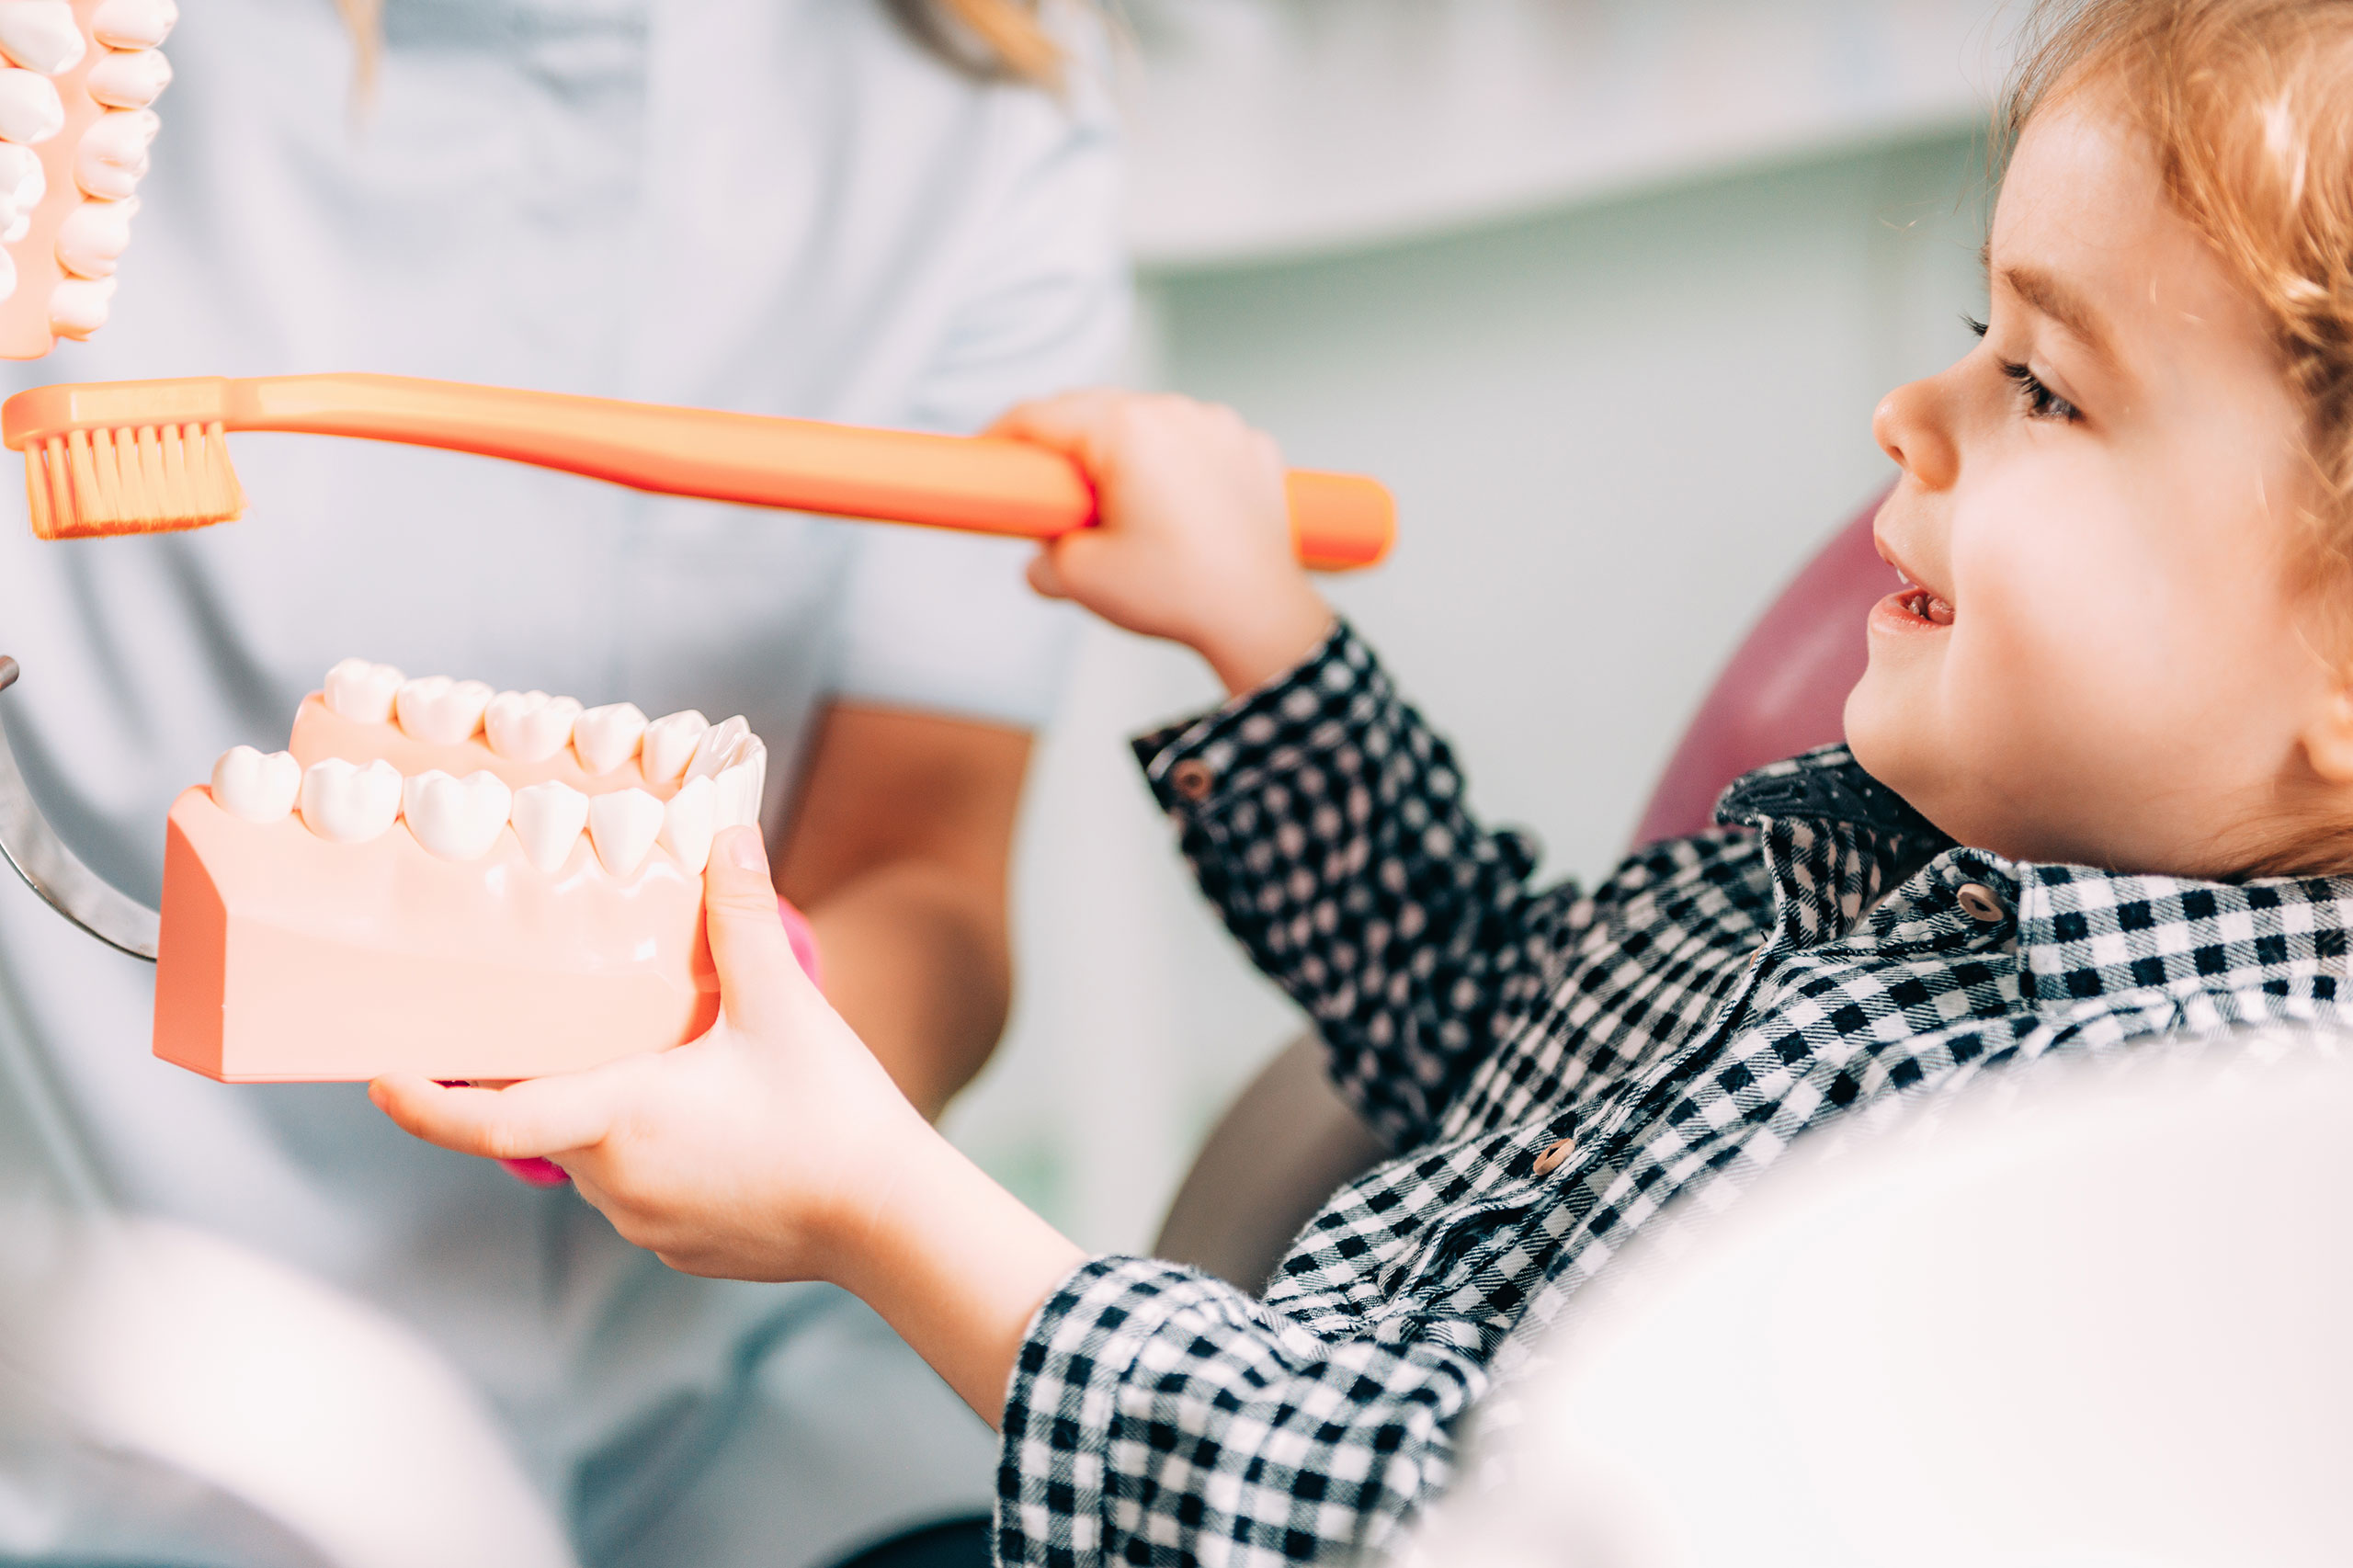 歯科で歯ブラシと歯の模型を使って歯磨きの仕方を教えてもらっている女の子